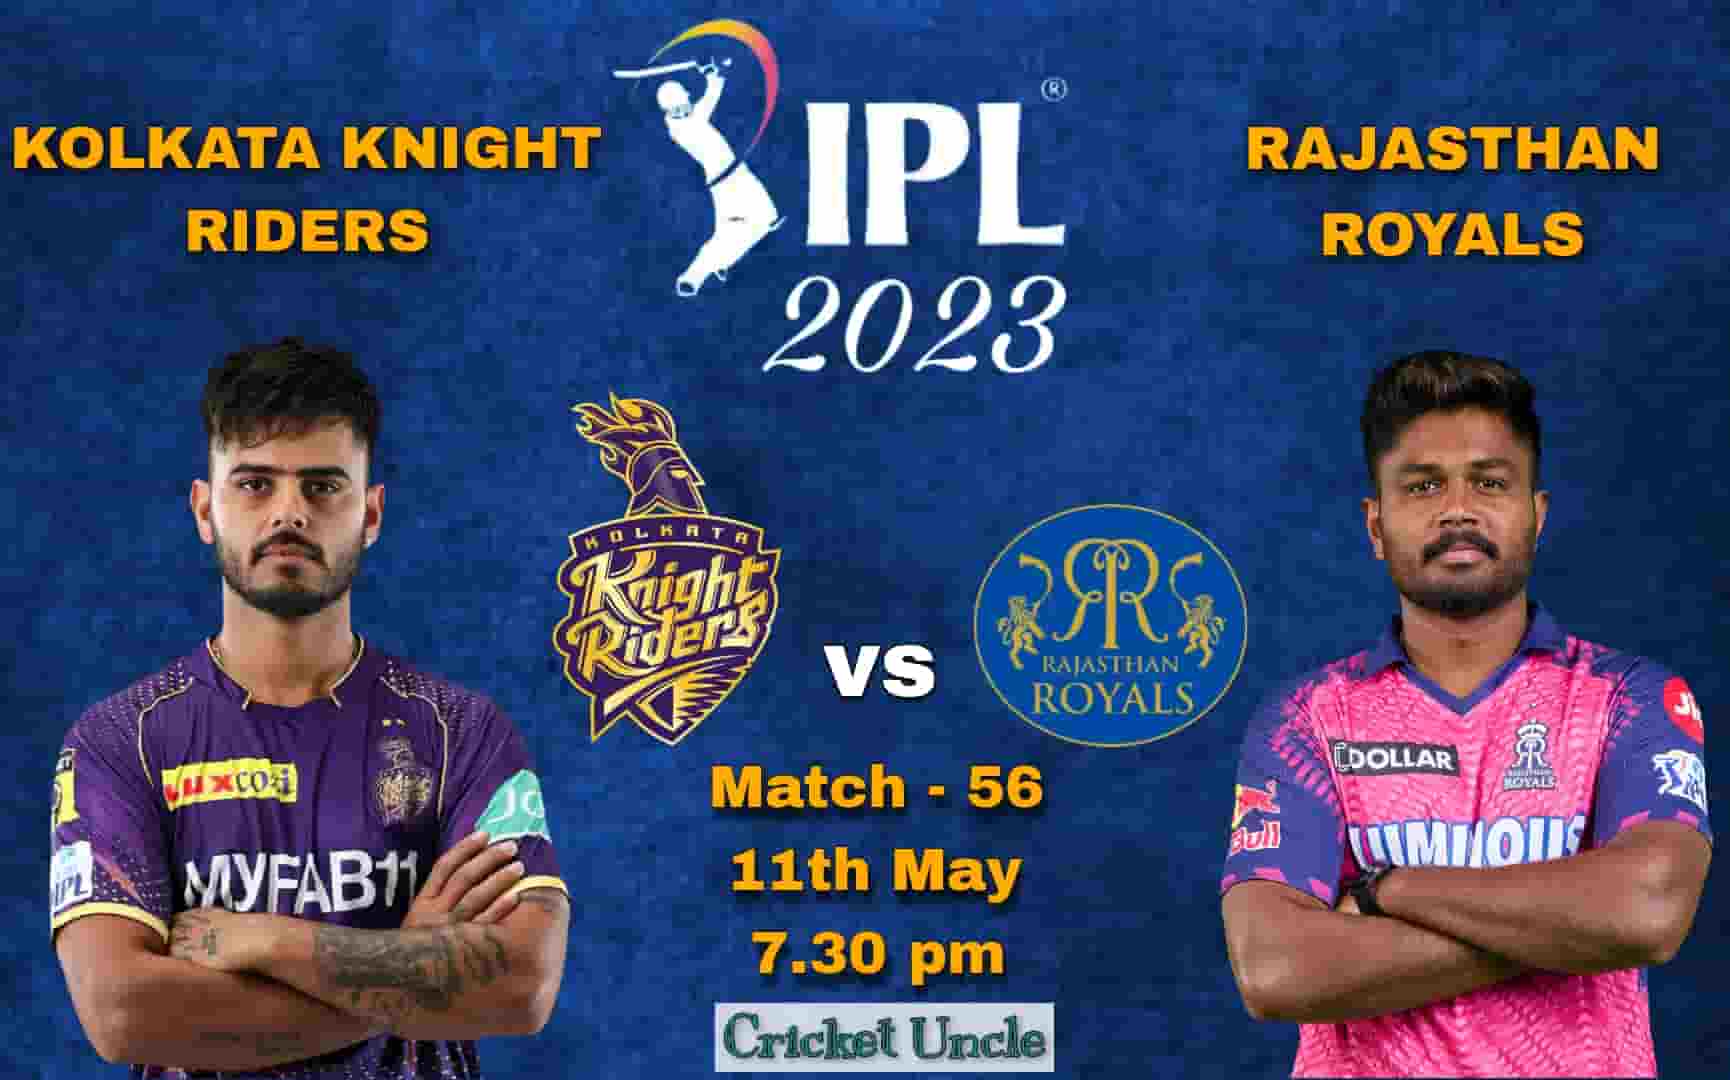 Poster of KKR vs RR Match 56 IPL 2023